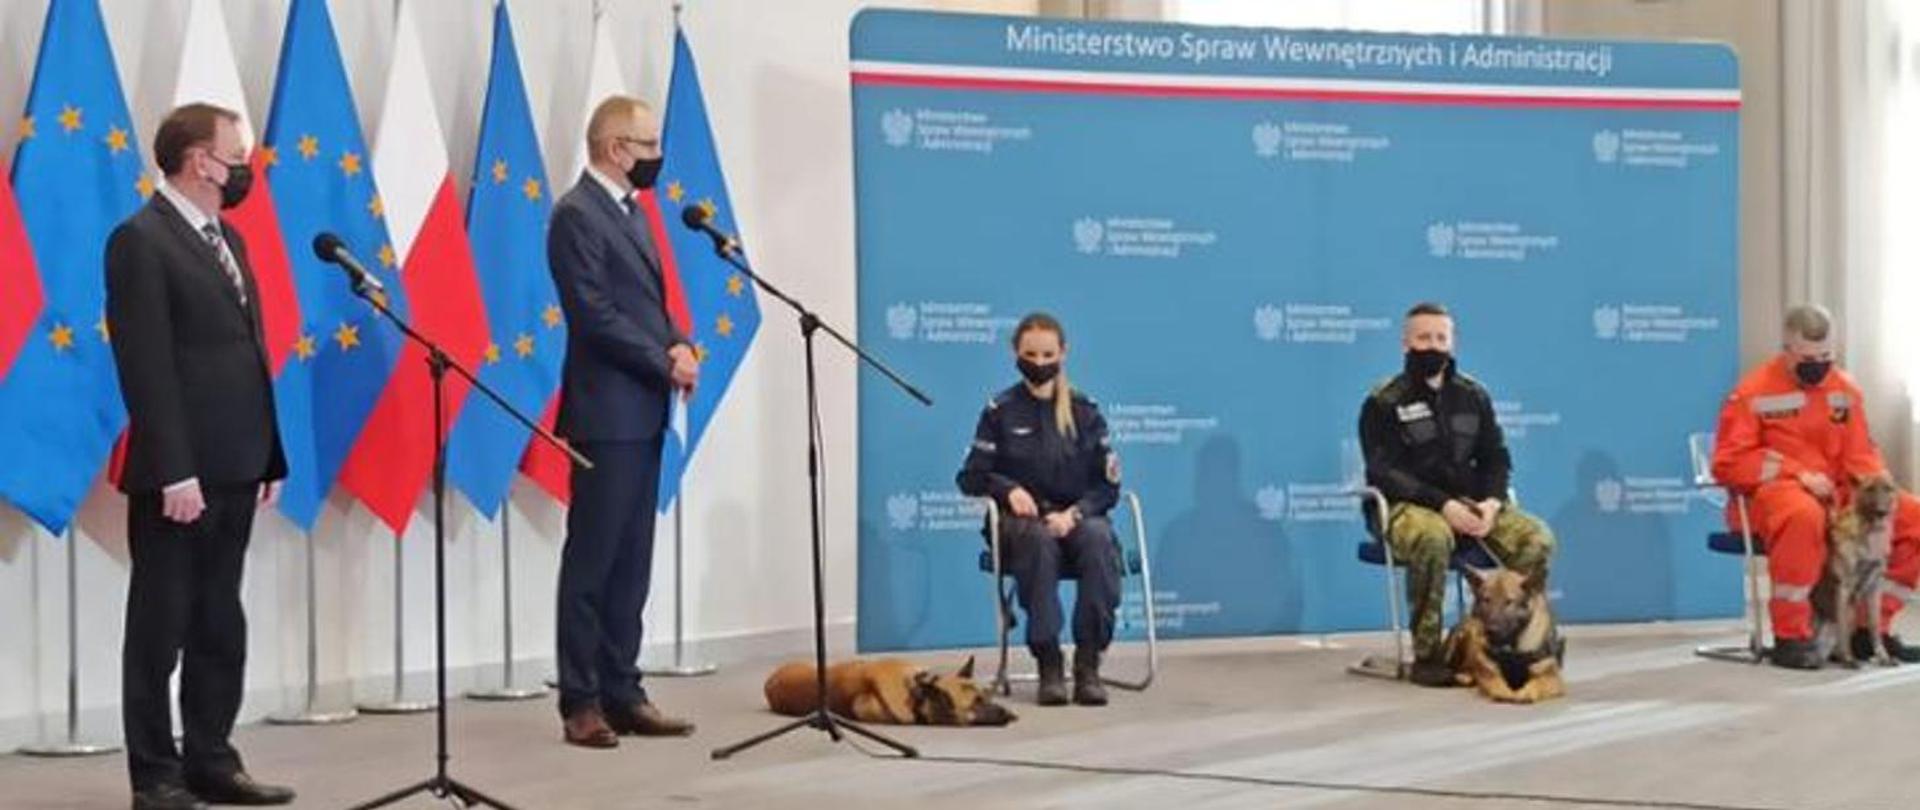 Konferencja prasowa ministra Mariusza Kamińskiego dotycząca uregulowania statusu zwierząt w służbach MSWiA